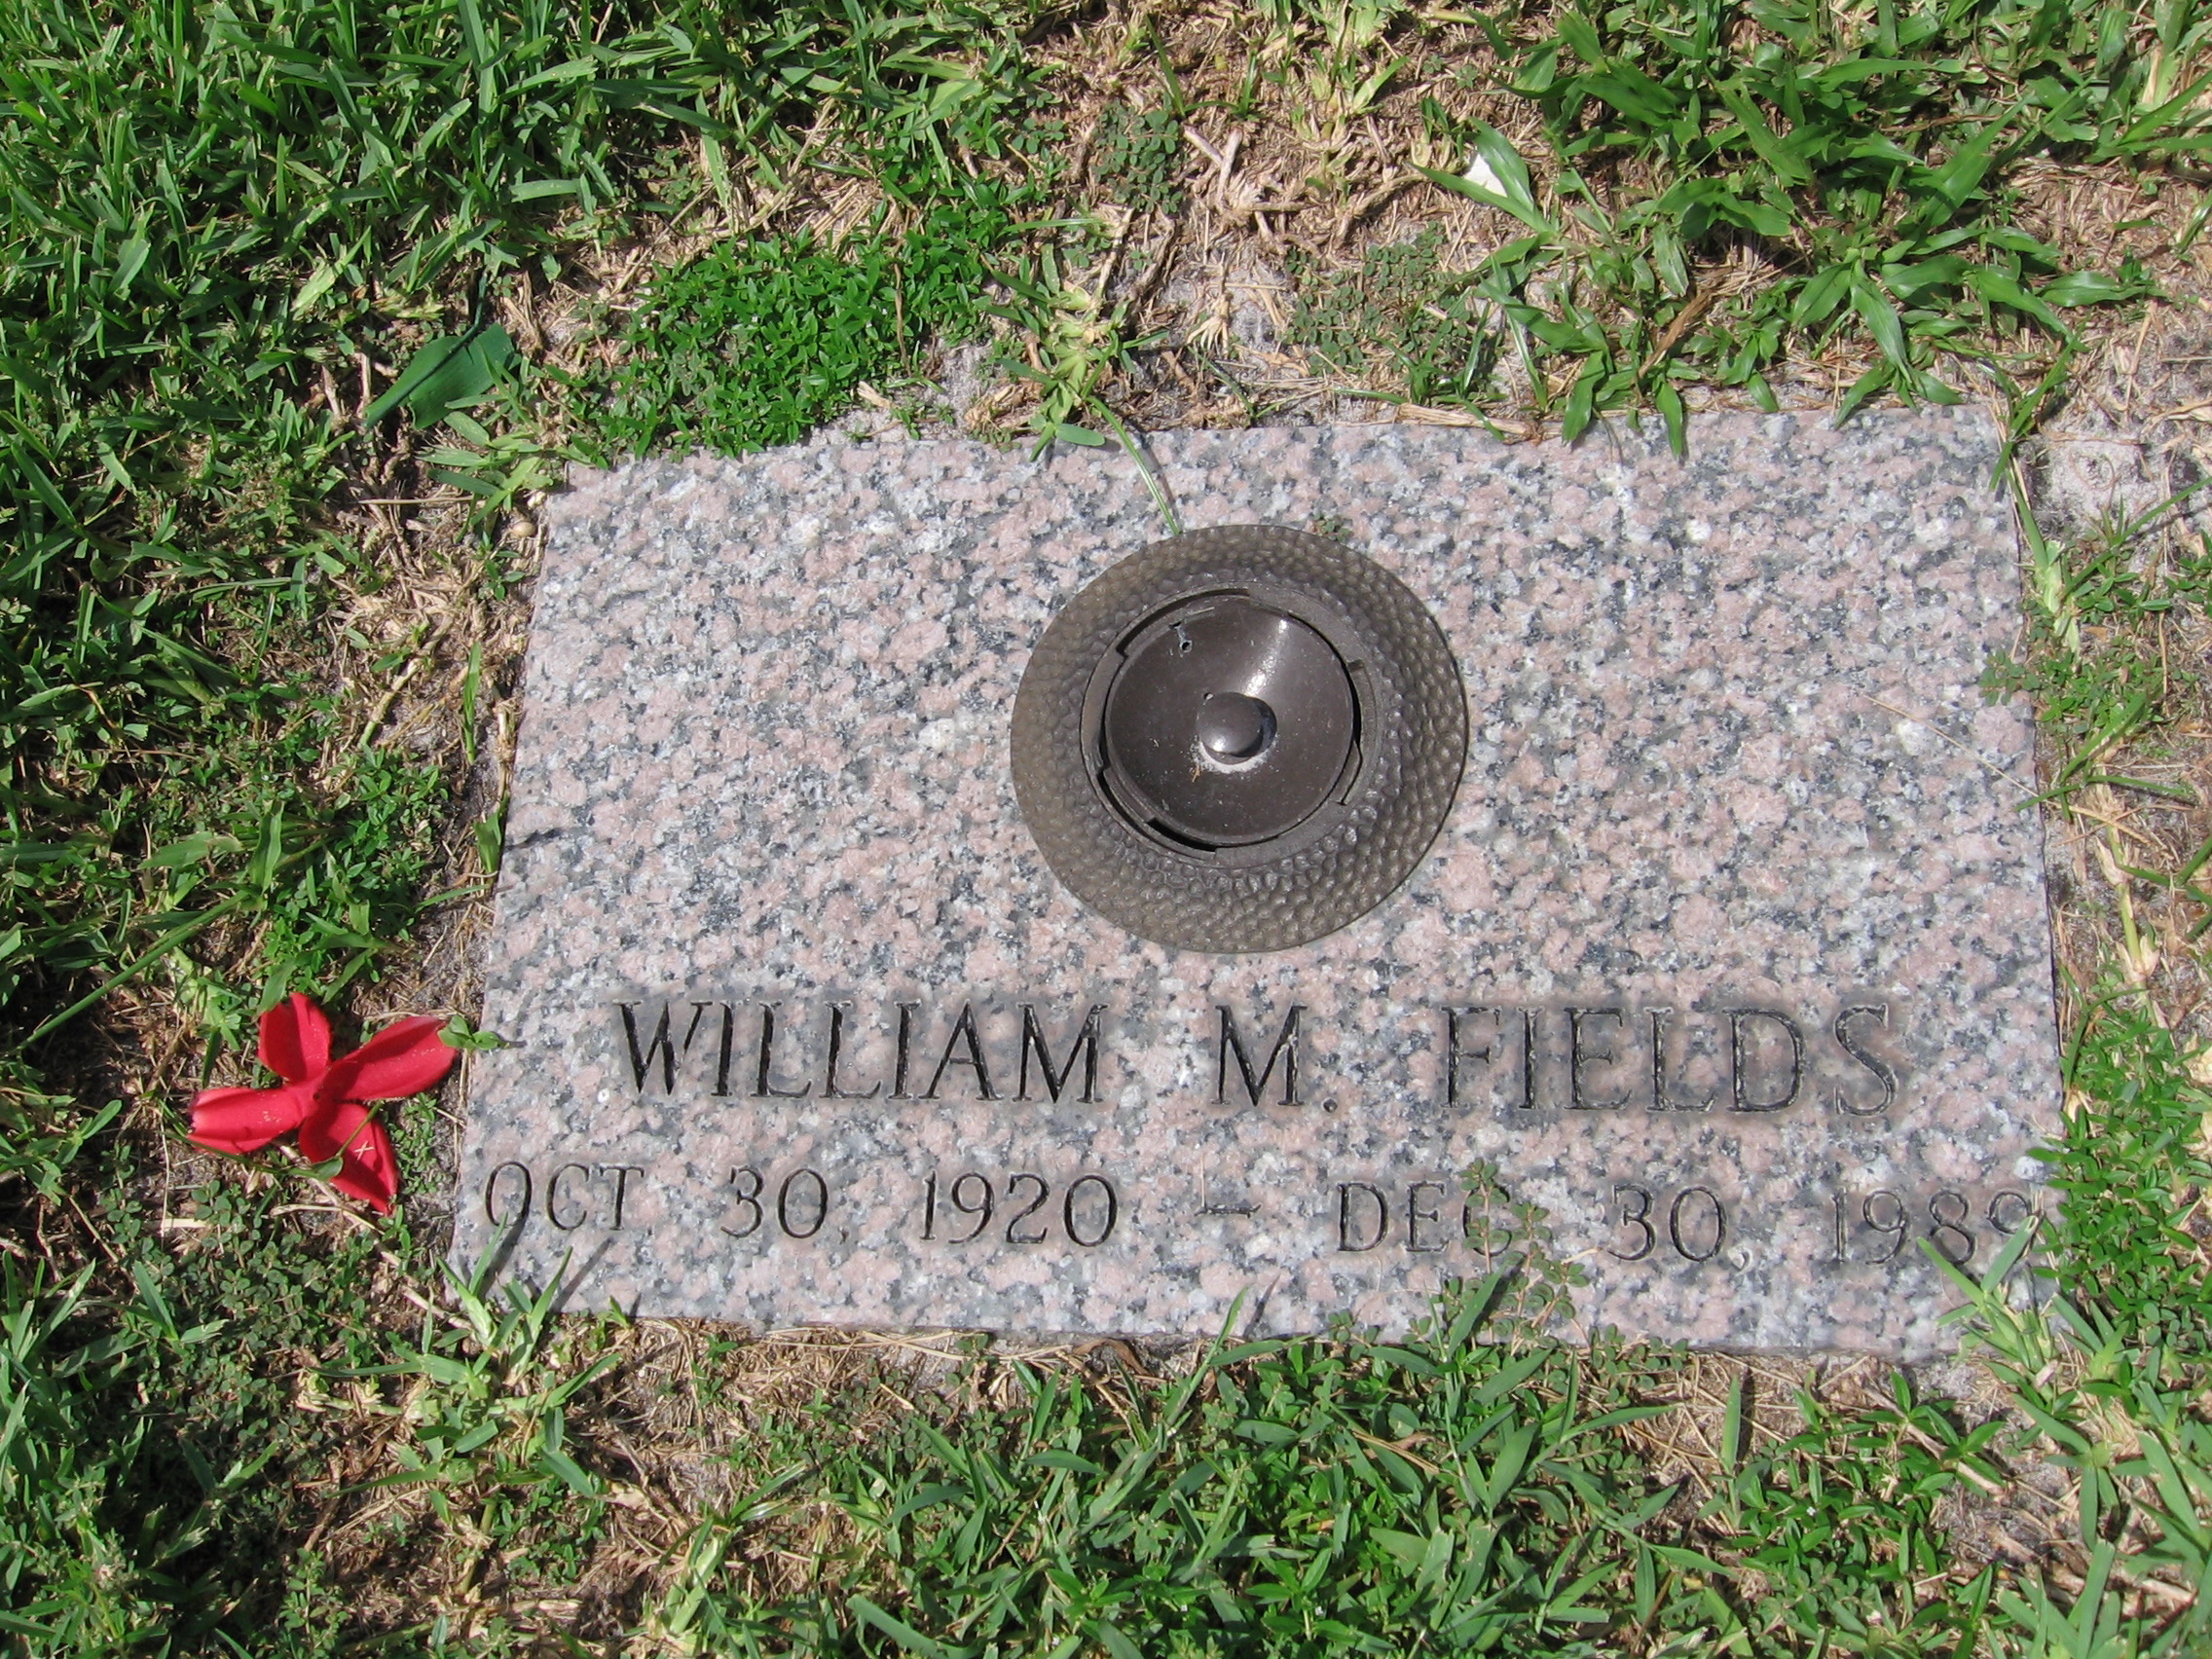 William M Fields